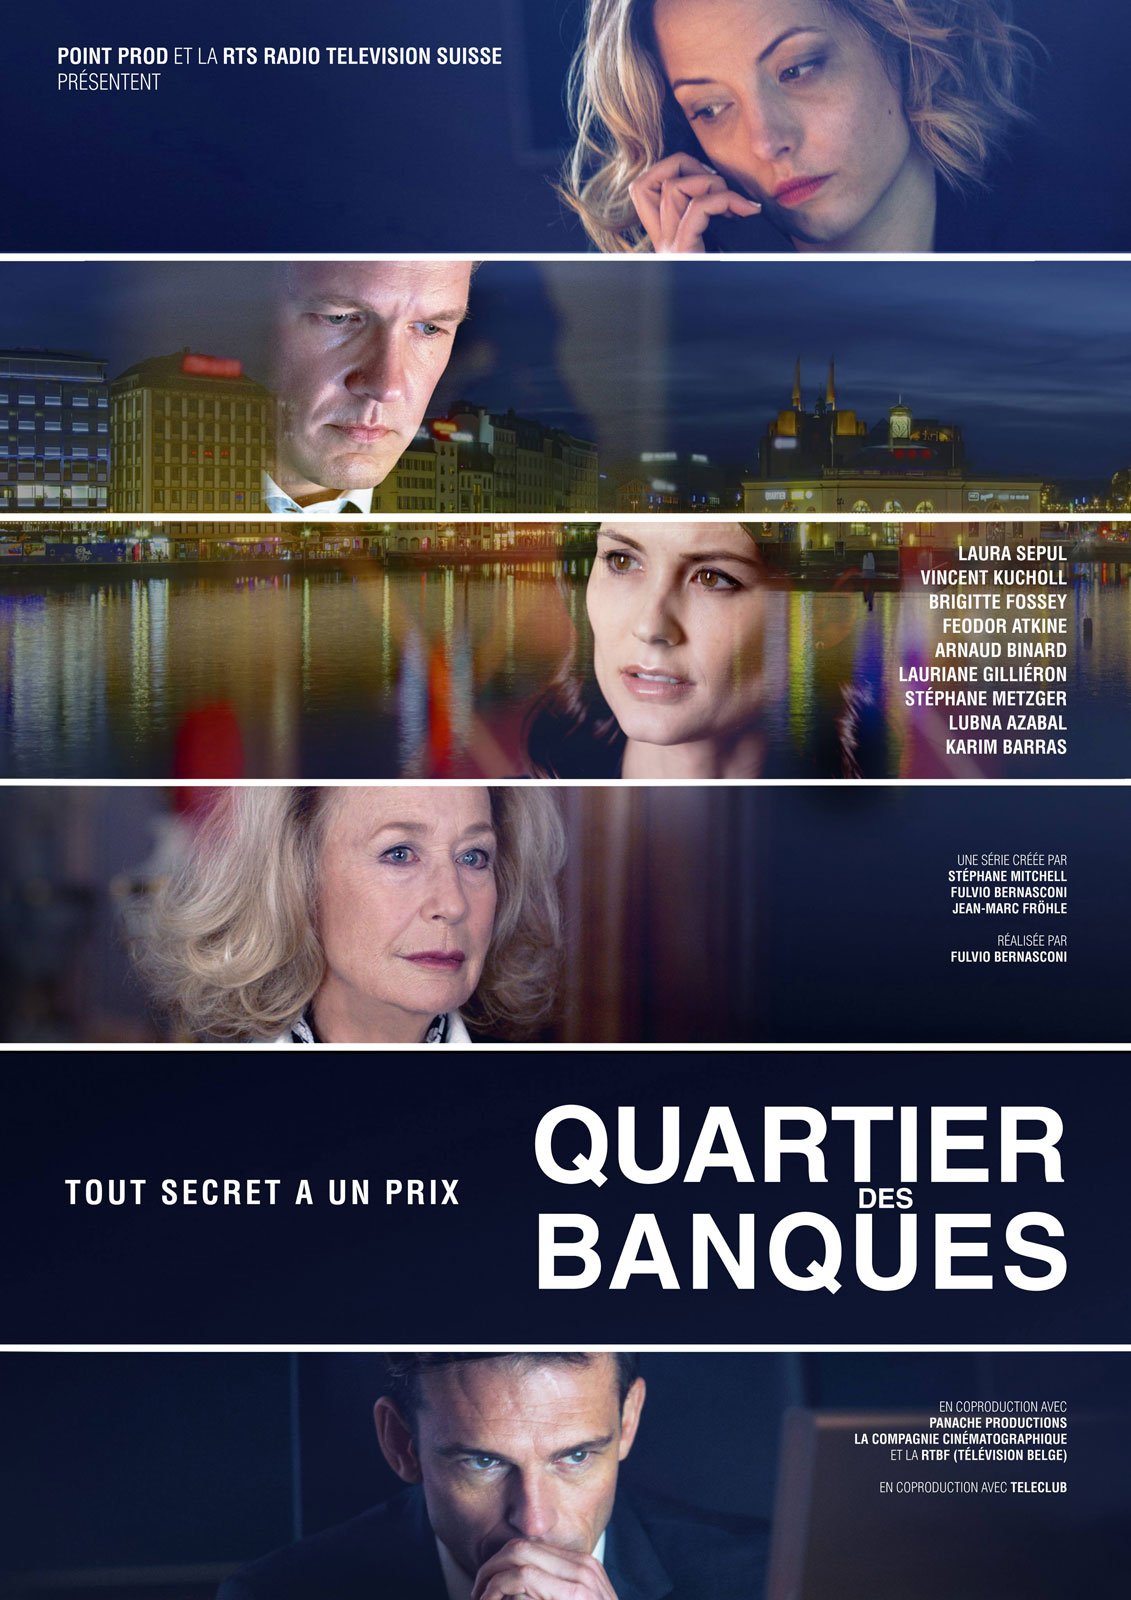 [心得] 銀行區 Quartier des Banques S01 (雷) RTS 瑞士金融劇 2017